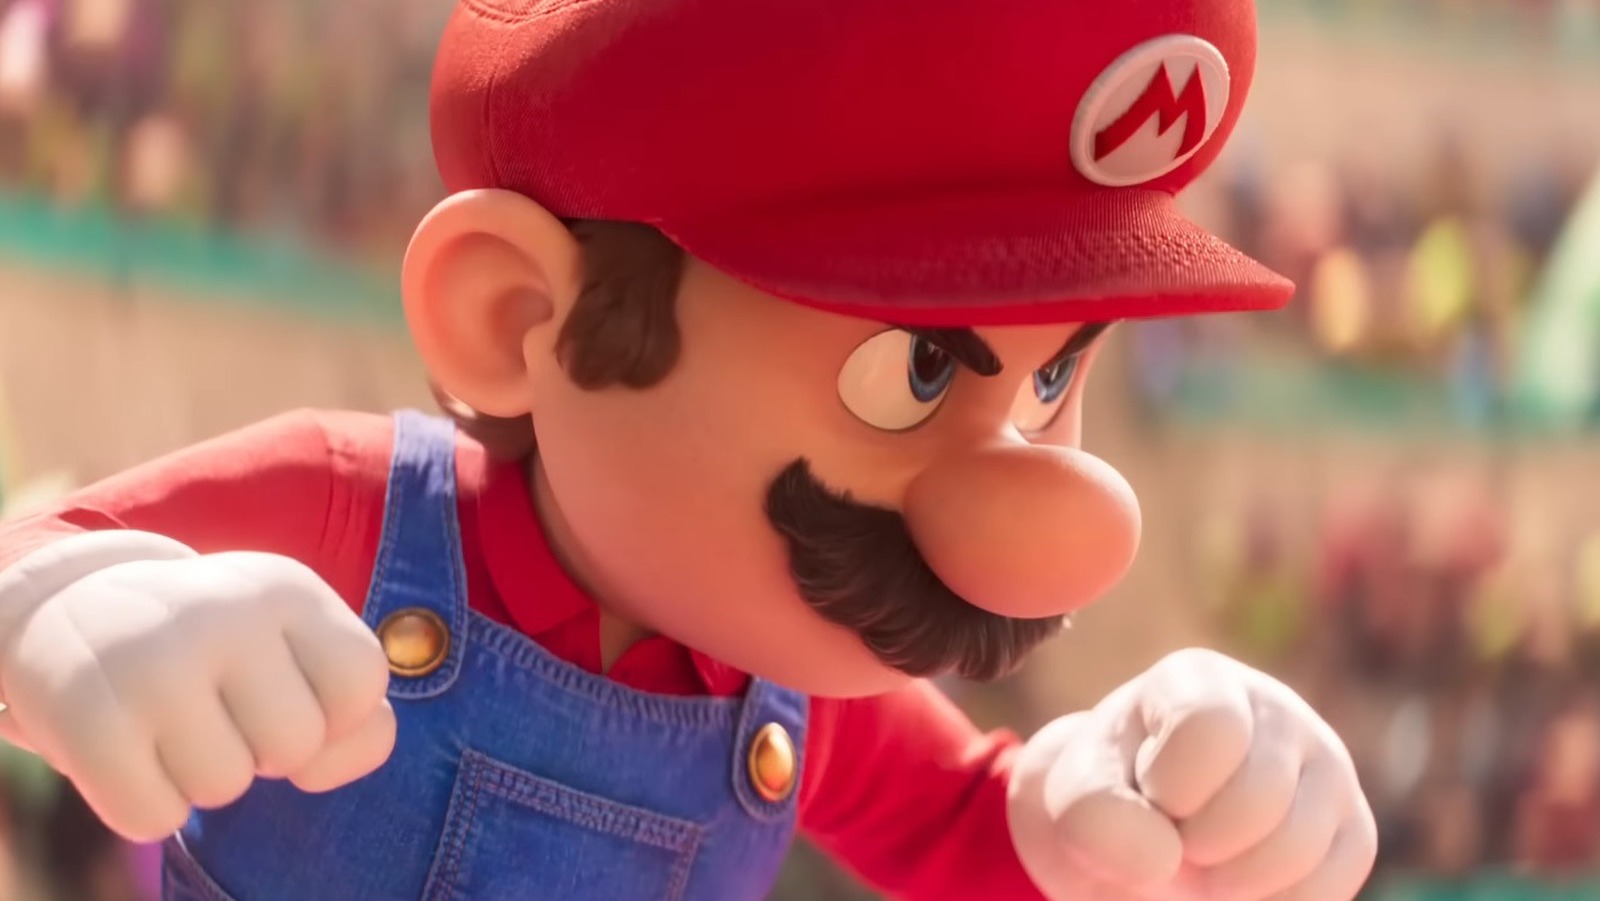 Super Mario Bros.' movie delayed to April 2023